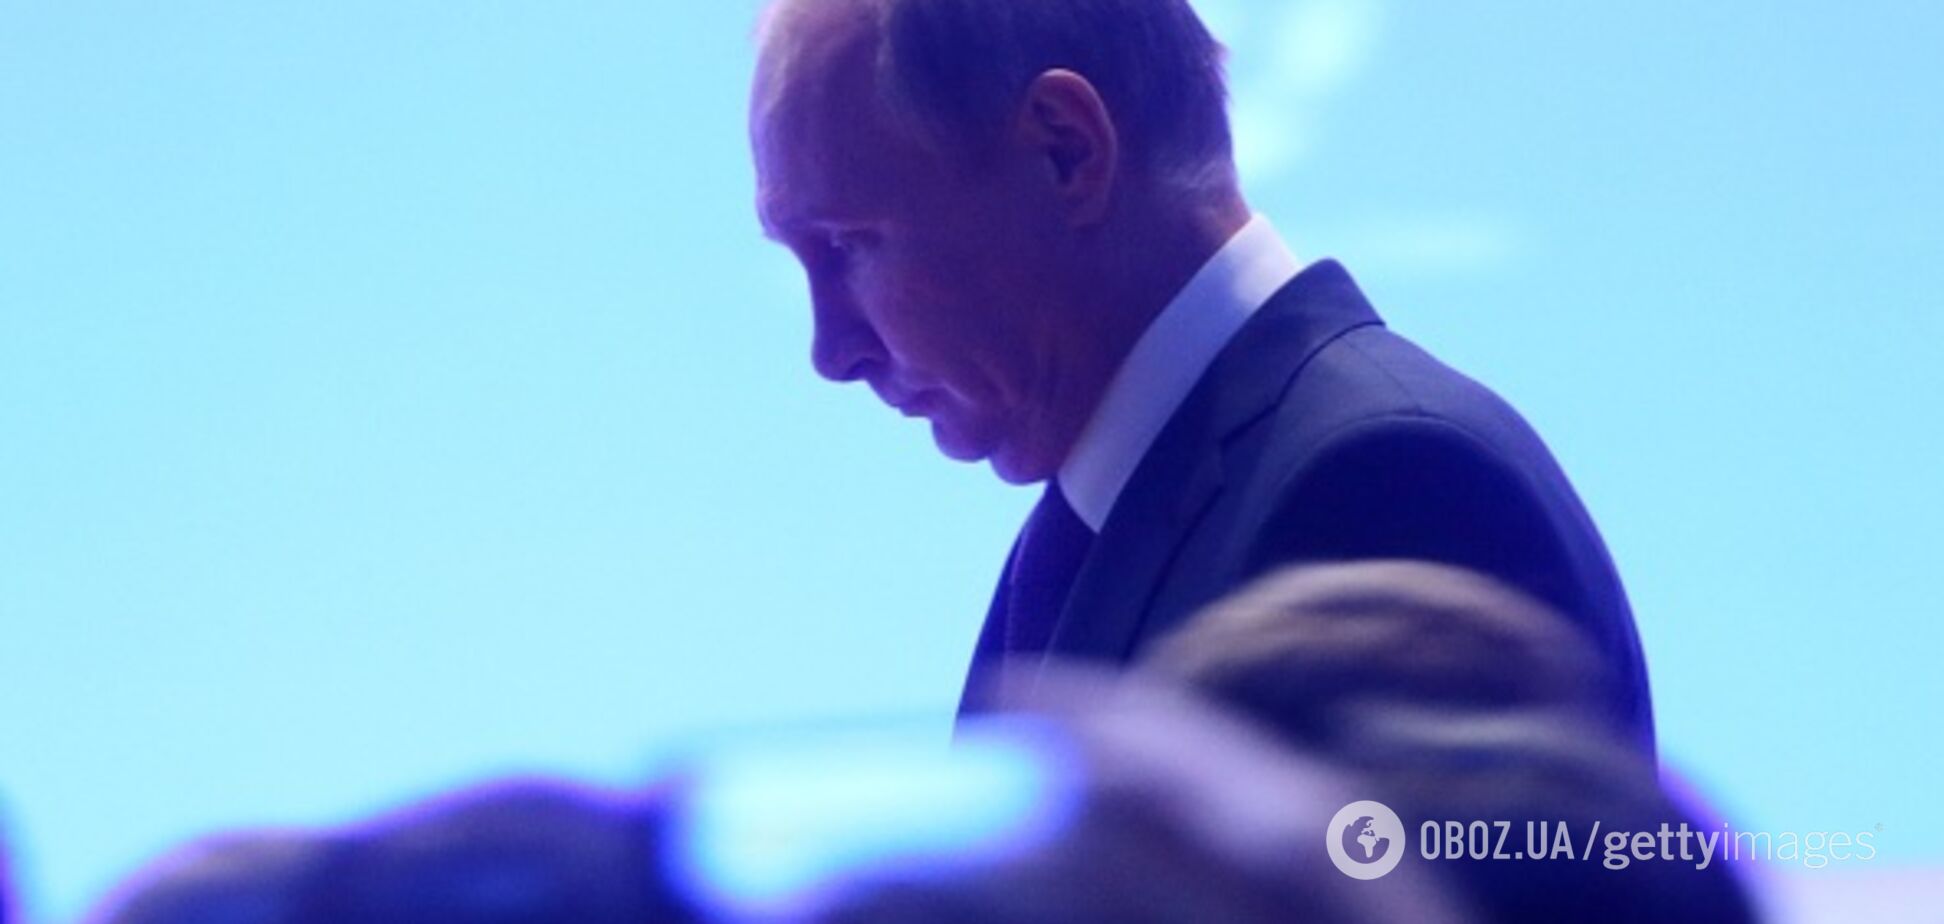 Смерть Путина станет катастрофой для Украины: историк объяснил, почему 